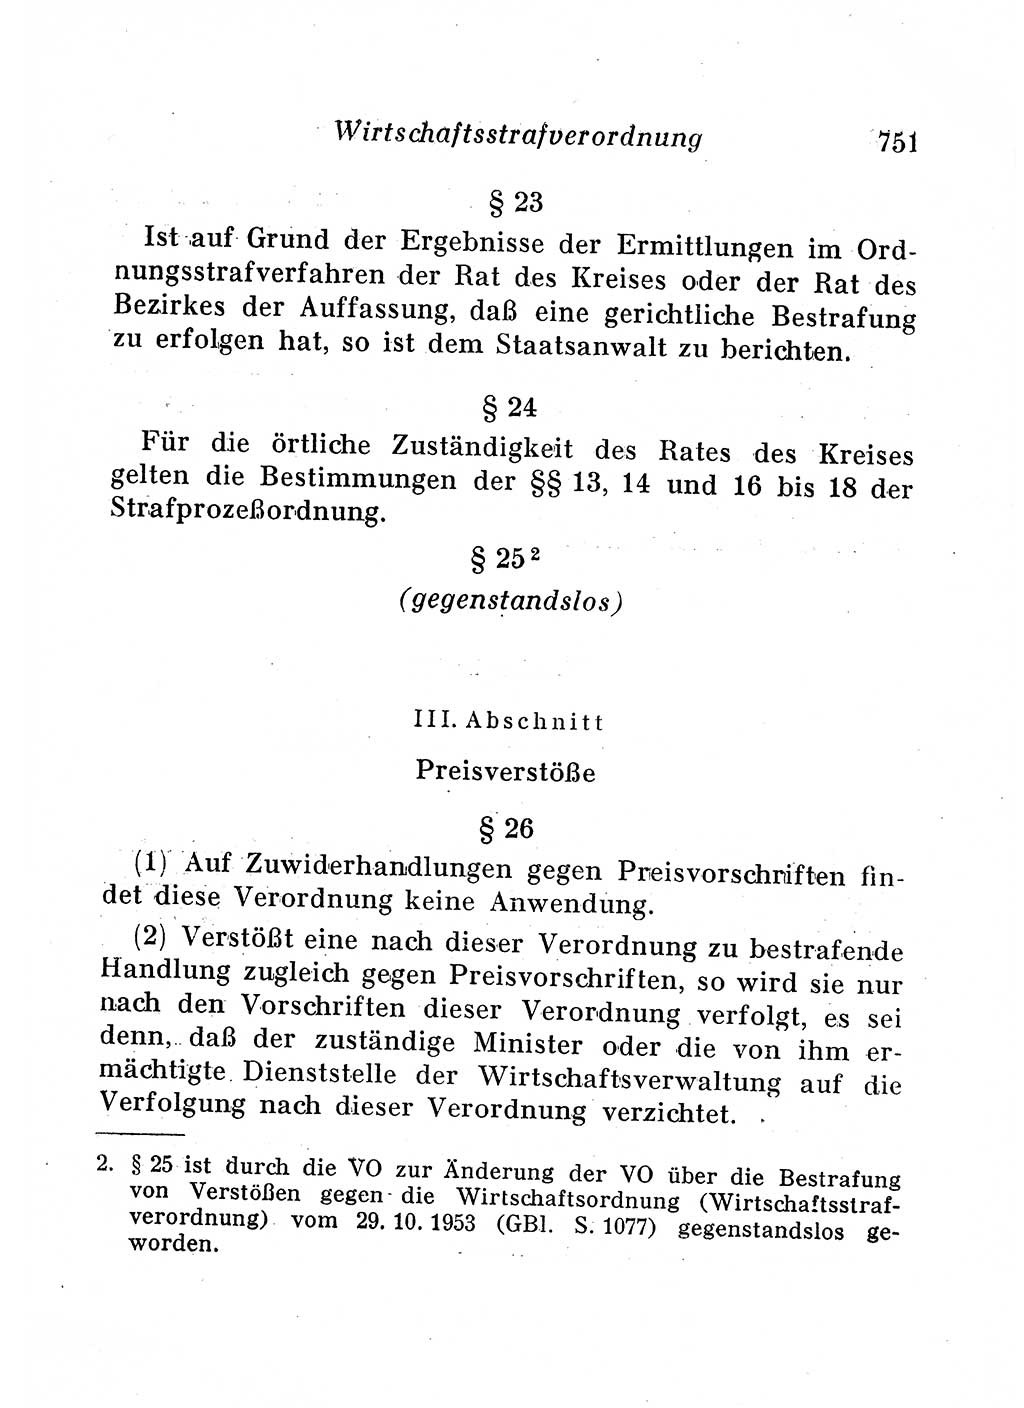 Staats- und verwaltungsrechtliche Gesetze der Deutschen Demokratischen Republik (DDR) 1958, Seite 751 (StVerwR Ges. DDR 1958, S. 751)